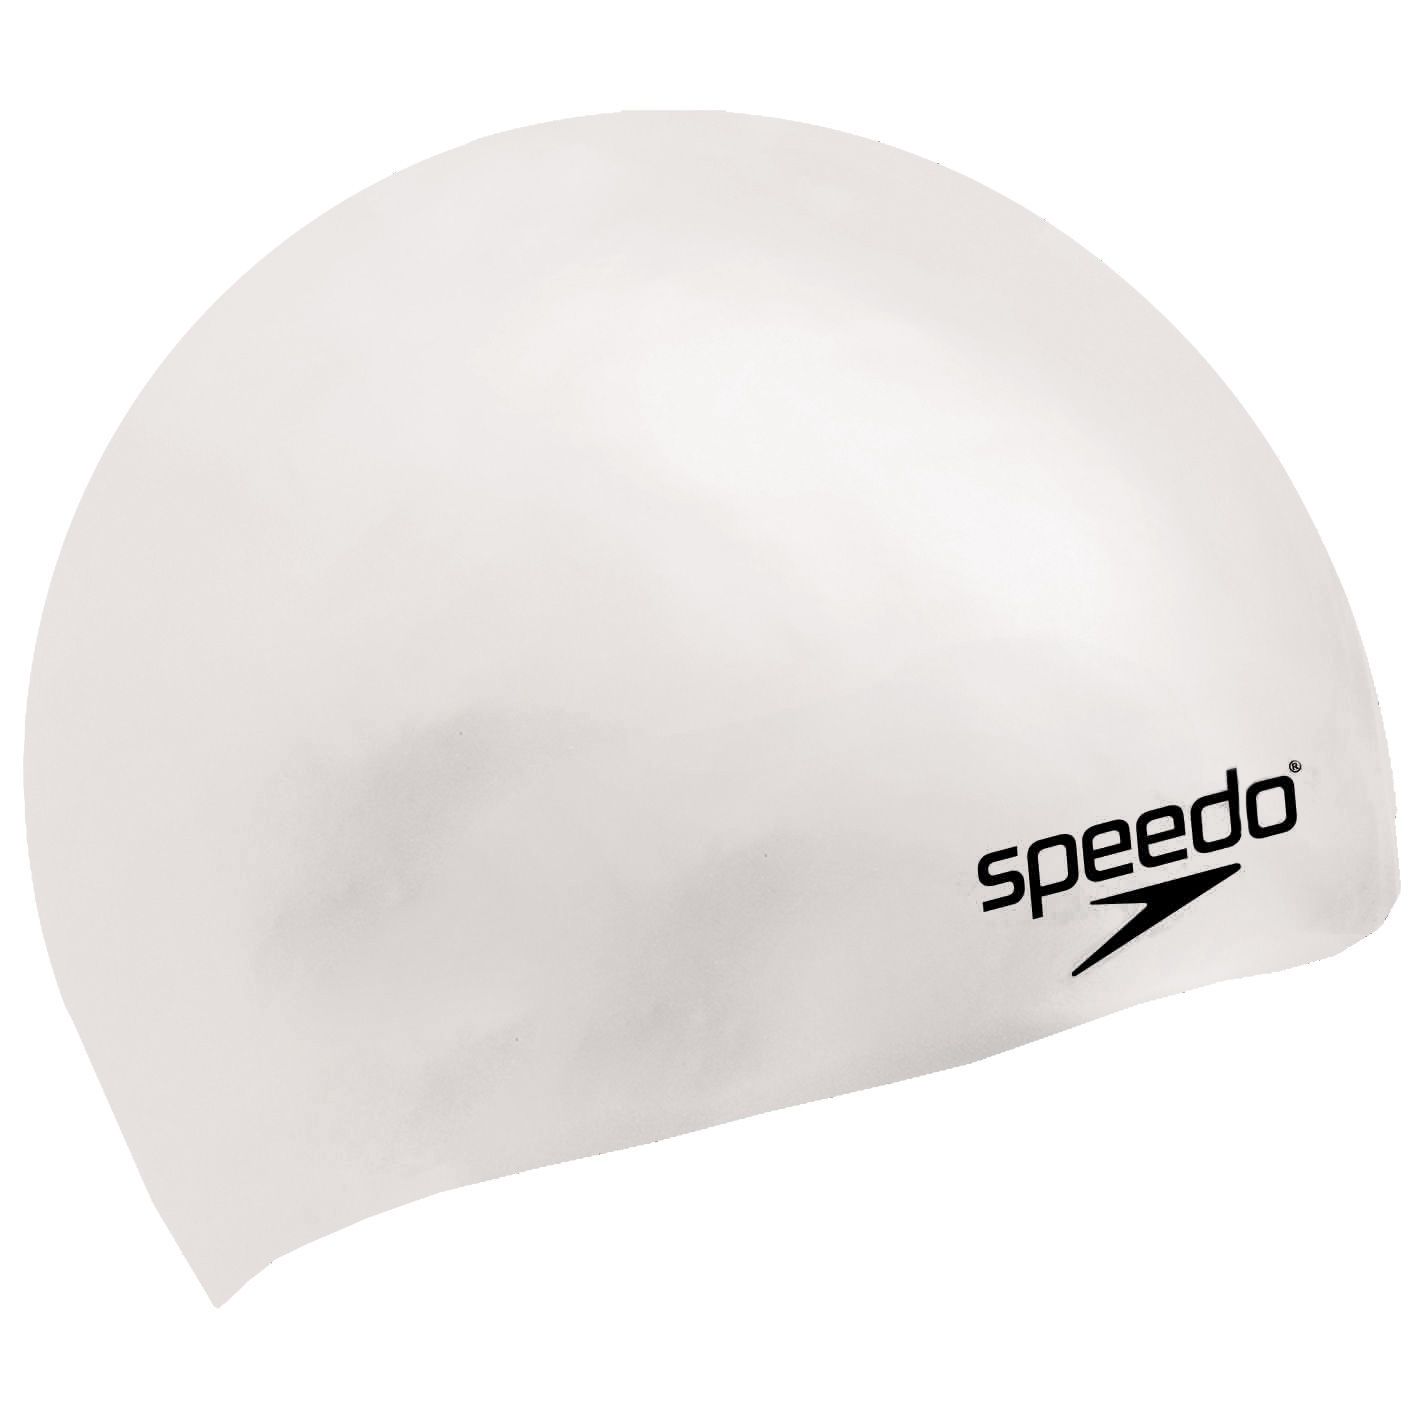  Speedo - Nón Bơi Trẻ Em Plain Moulded Silicone Junior (Trắng) Chống Thấm Nước 